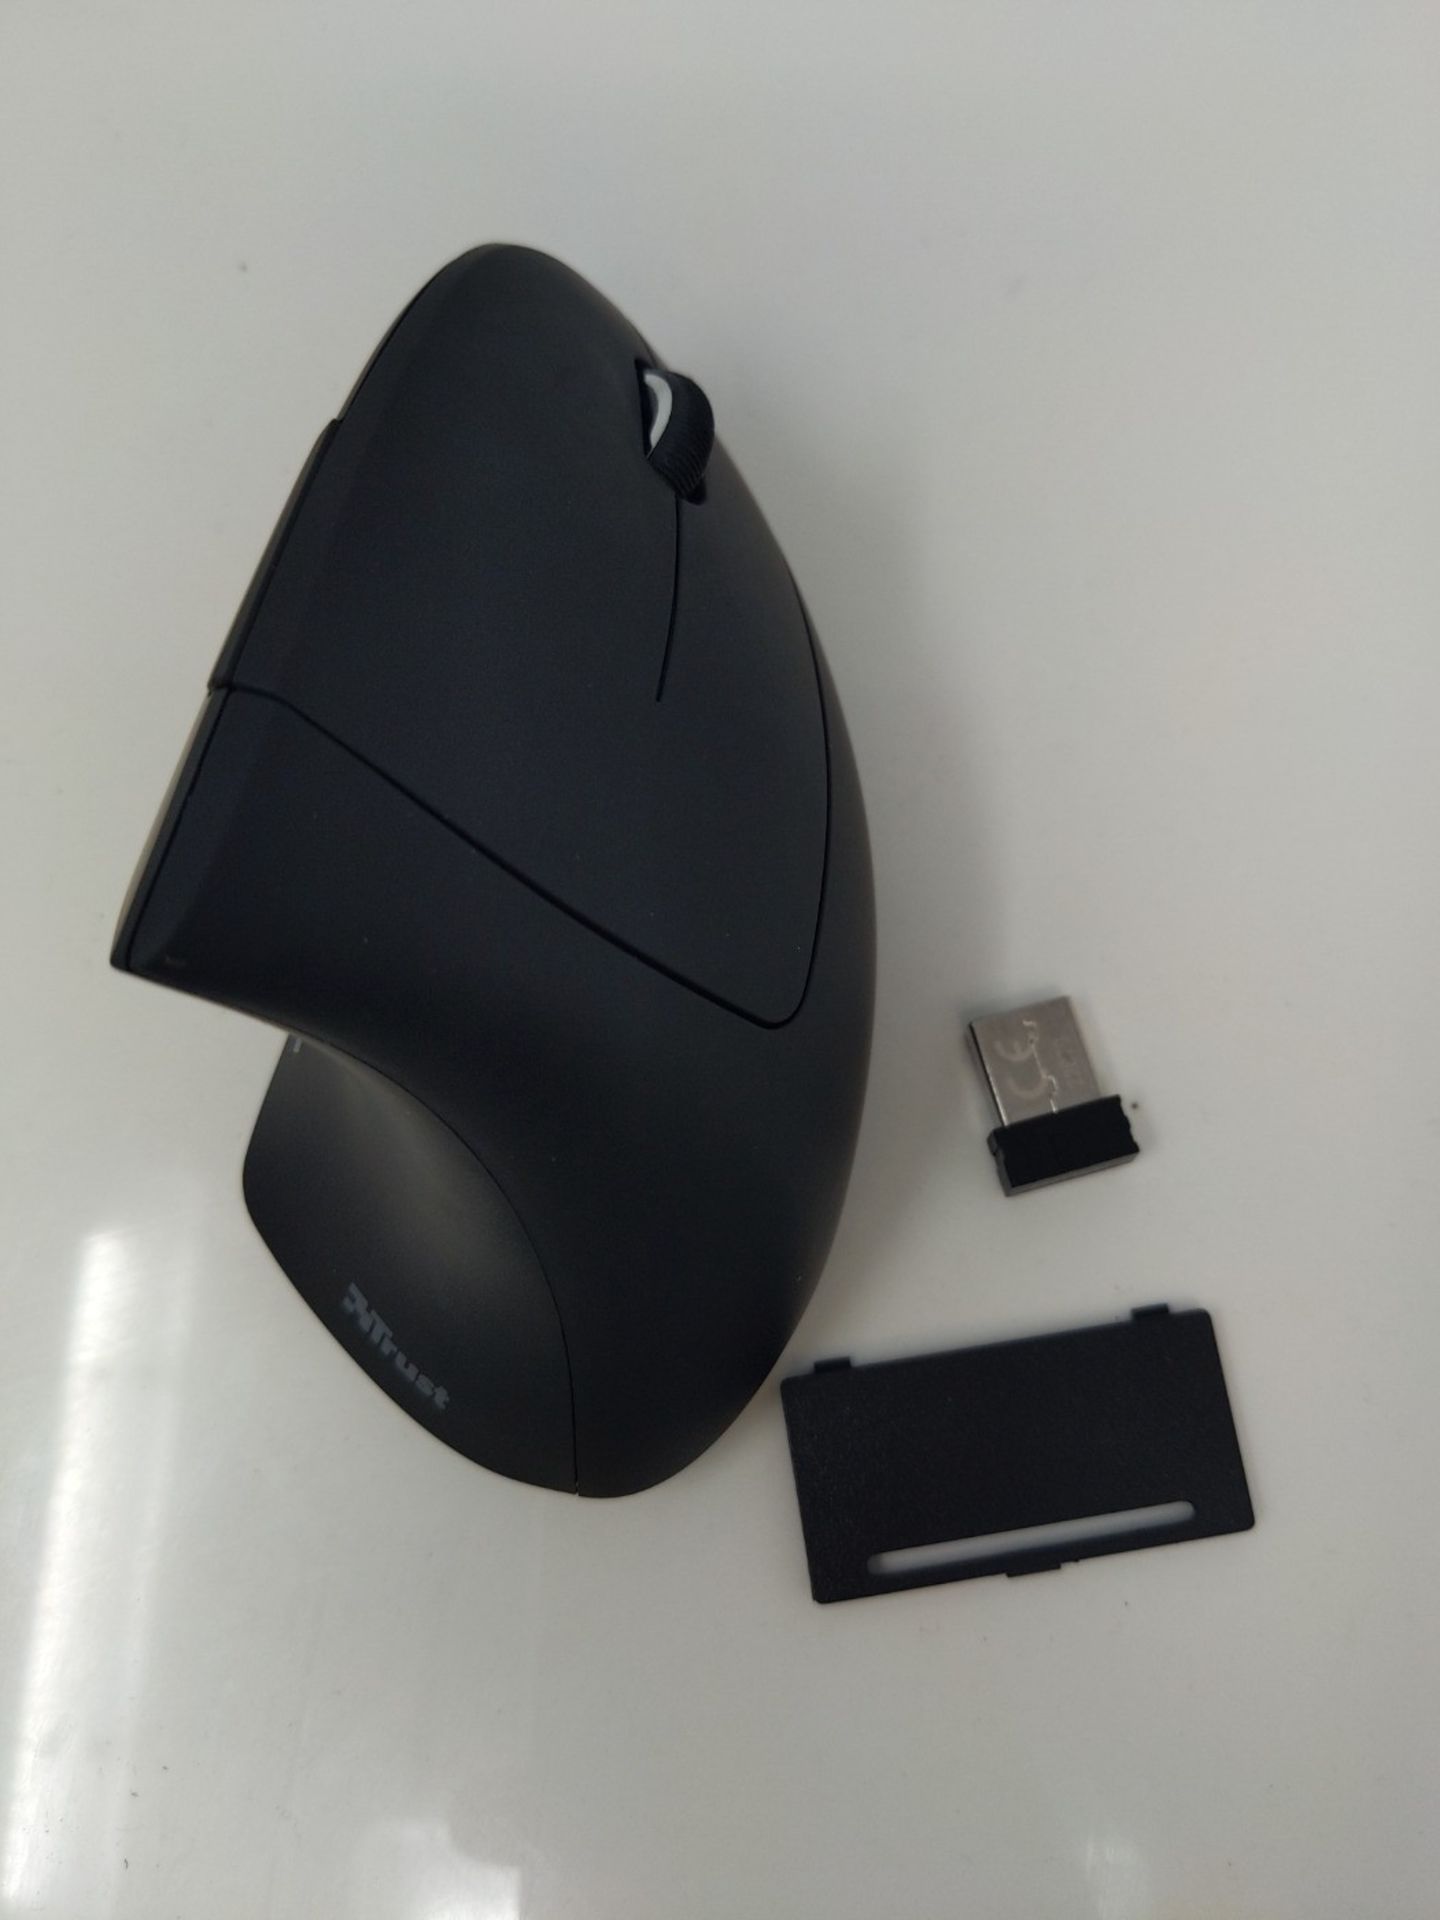 Trust Verto Mouse Verticale Wireless, Mouse Ergonomico senza Filo, 800/1200/1600 DPI, - Image 2 of 2